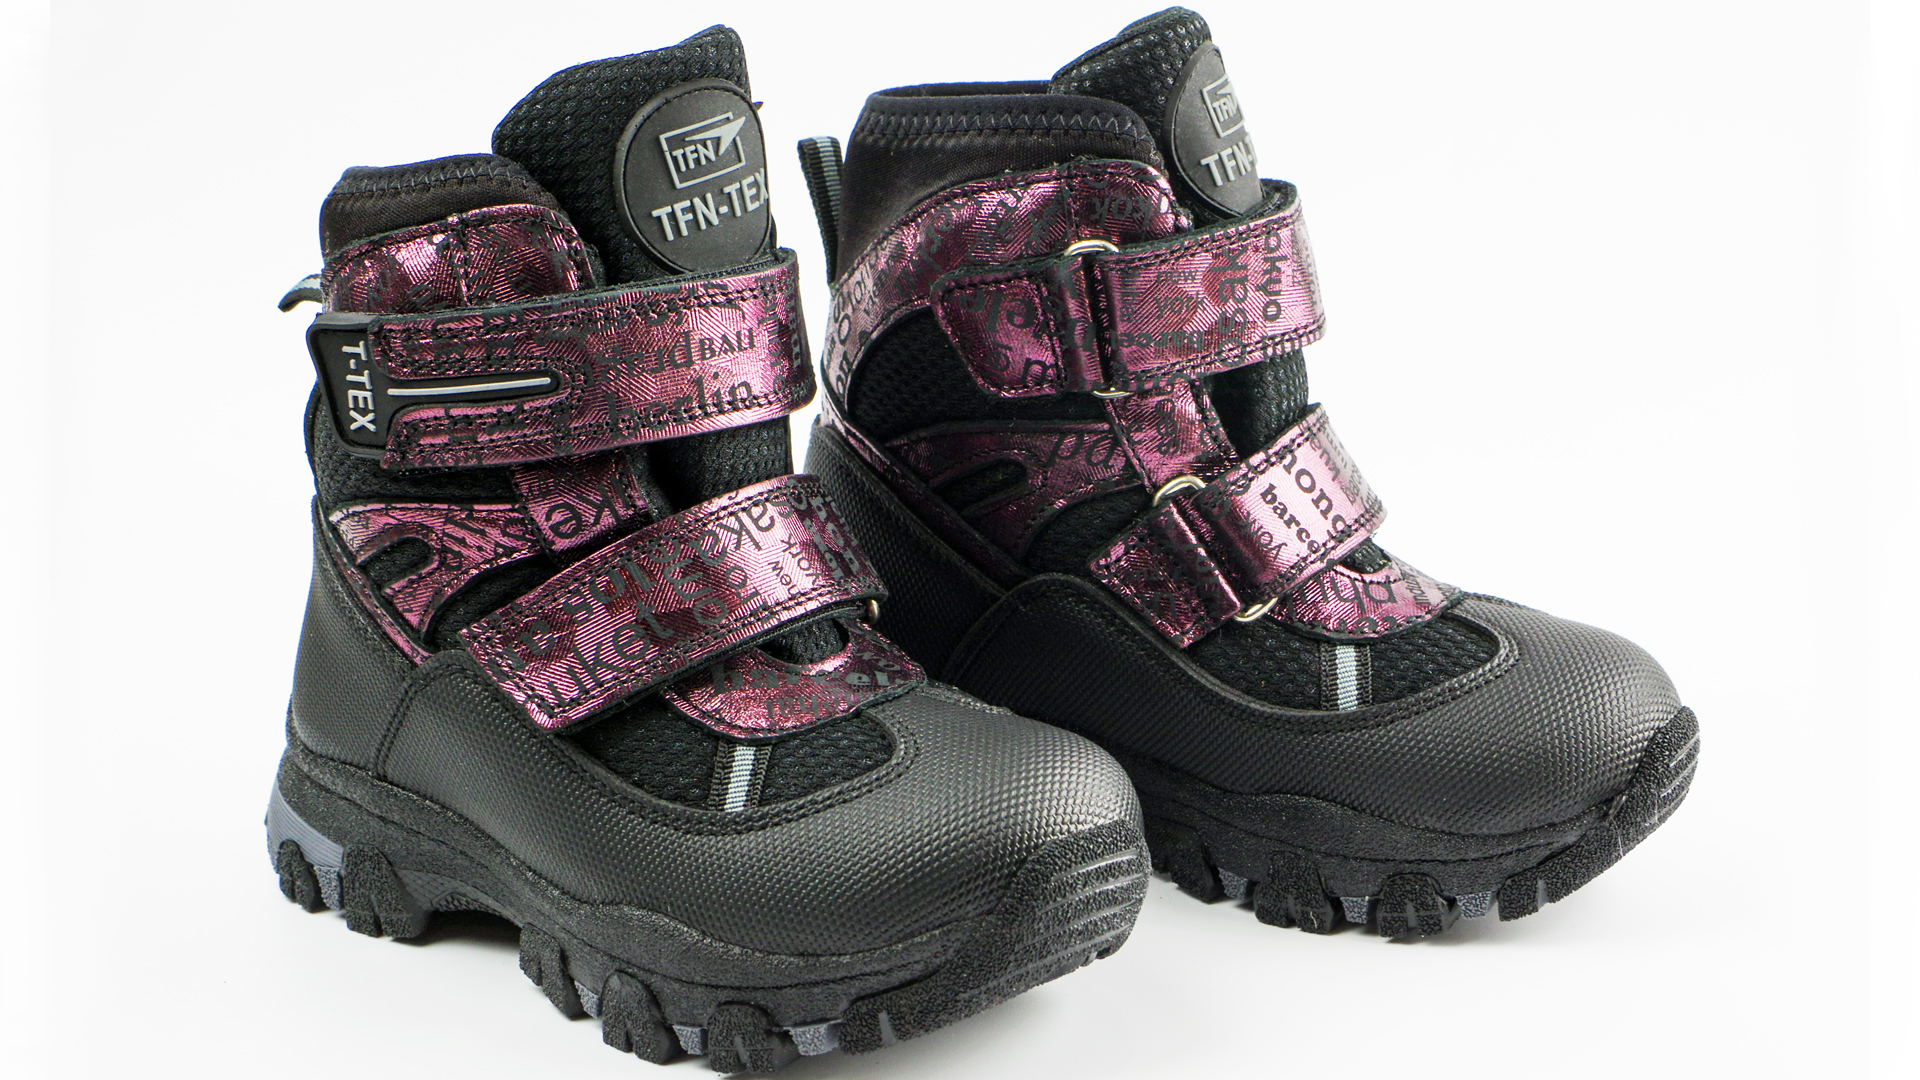 Зимові мембранні черевики (2151) для дівчинки, матеріал Мембрана, Чорний колір, 26-30 розміри – Sole Kids. Фото 2